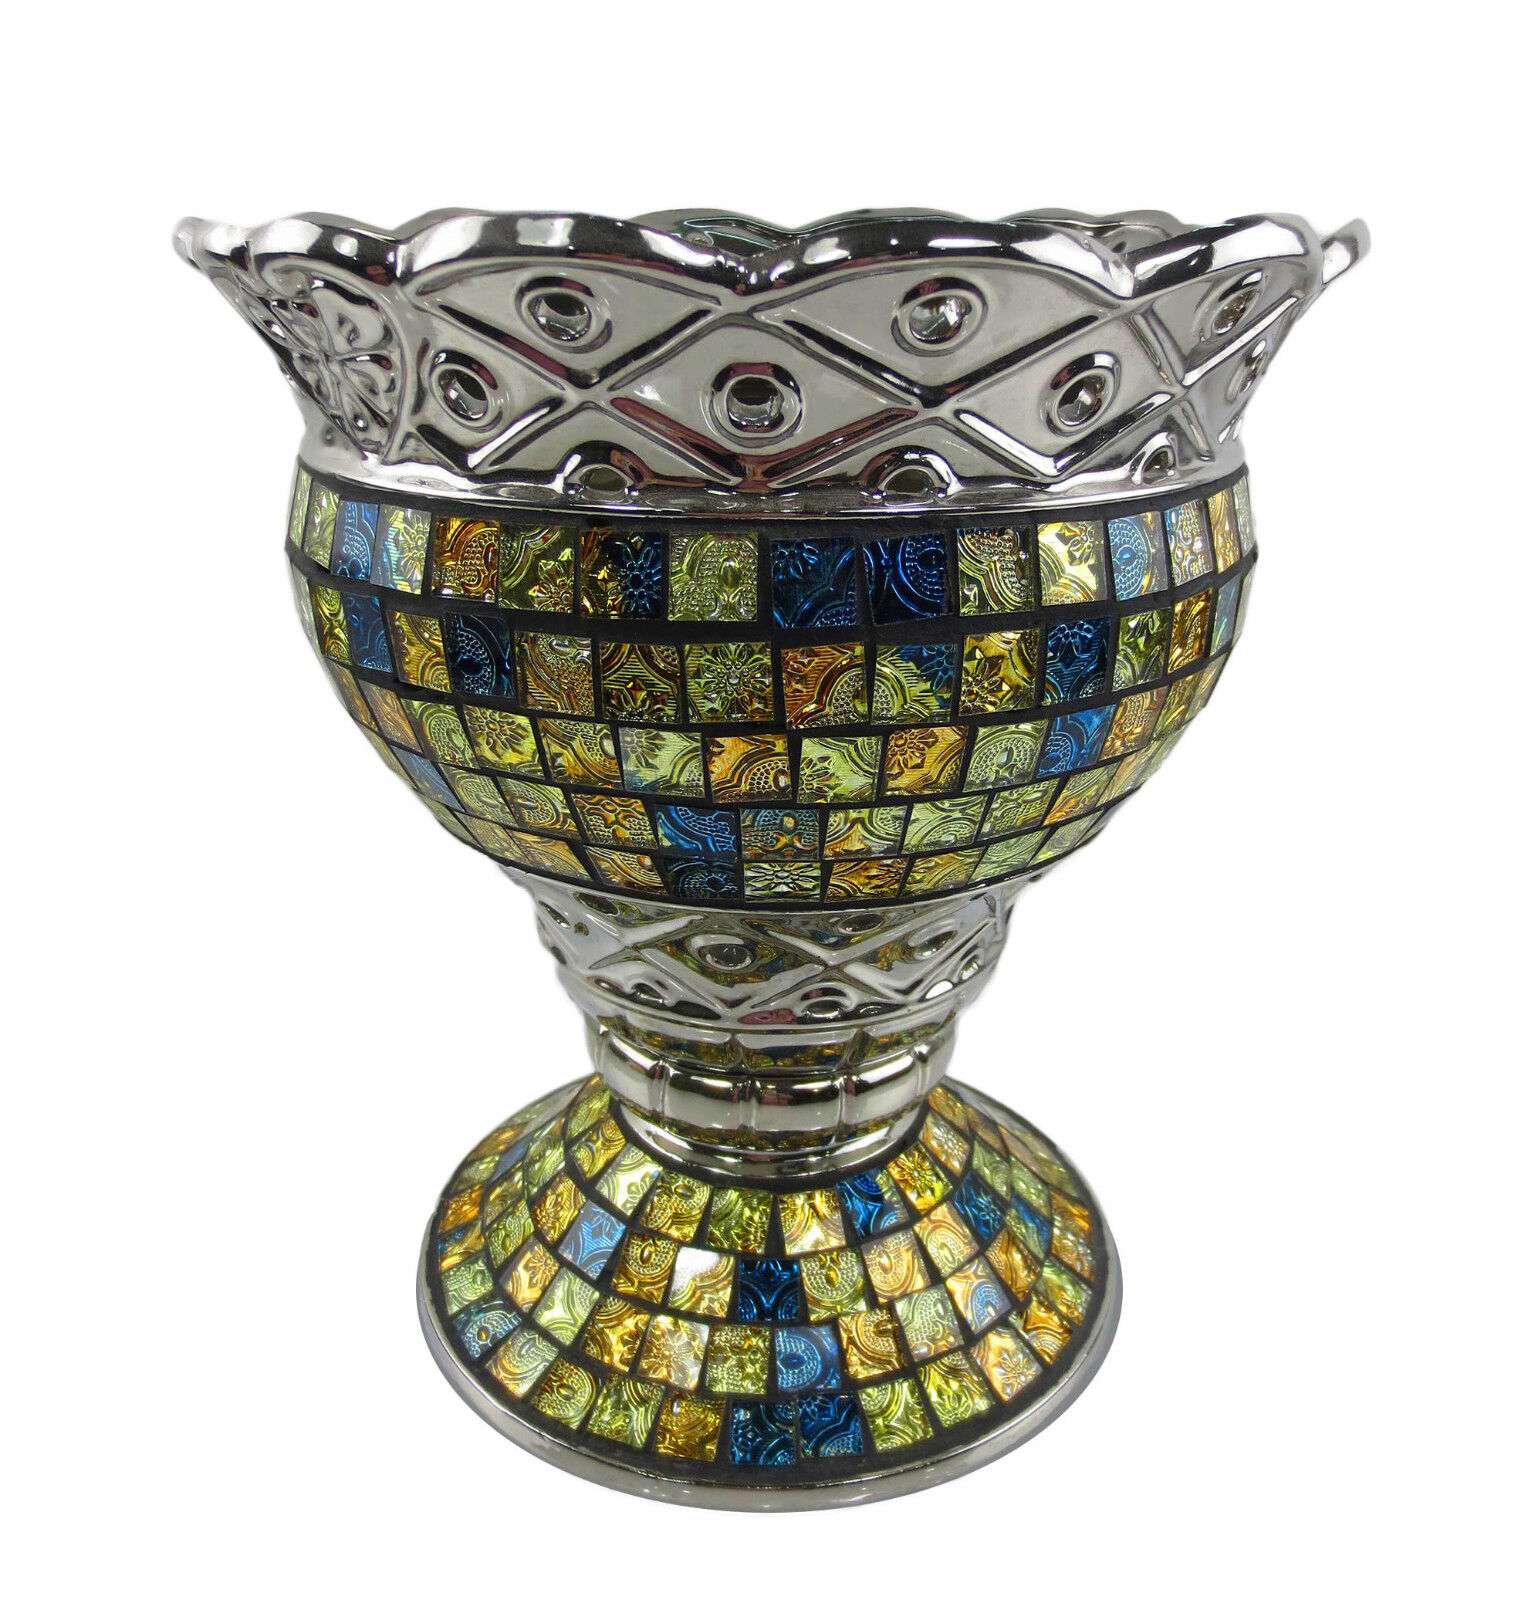 Dmcv001 Tall Decorative Ceramic & Glass Vase - 10 X 10 X 11.25 In.